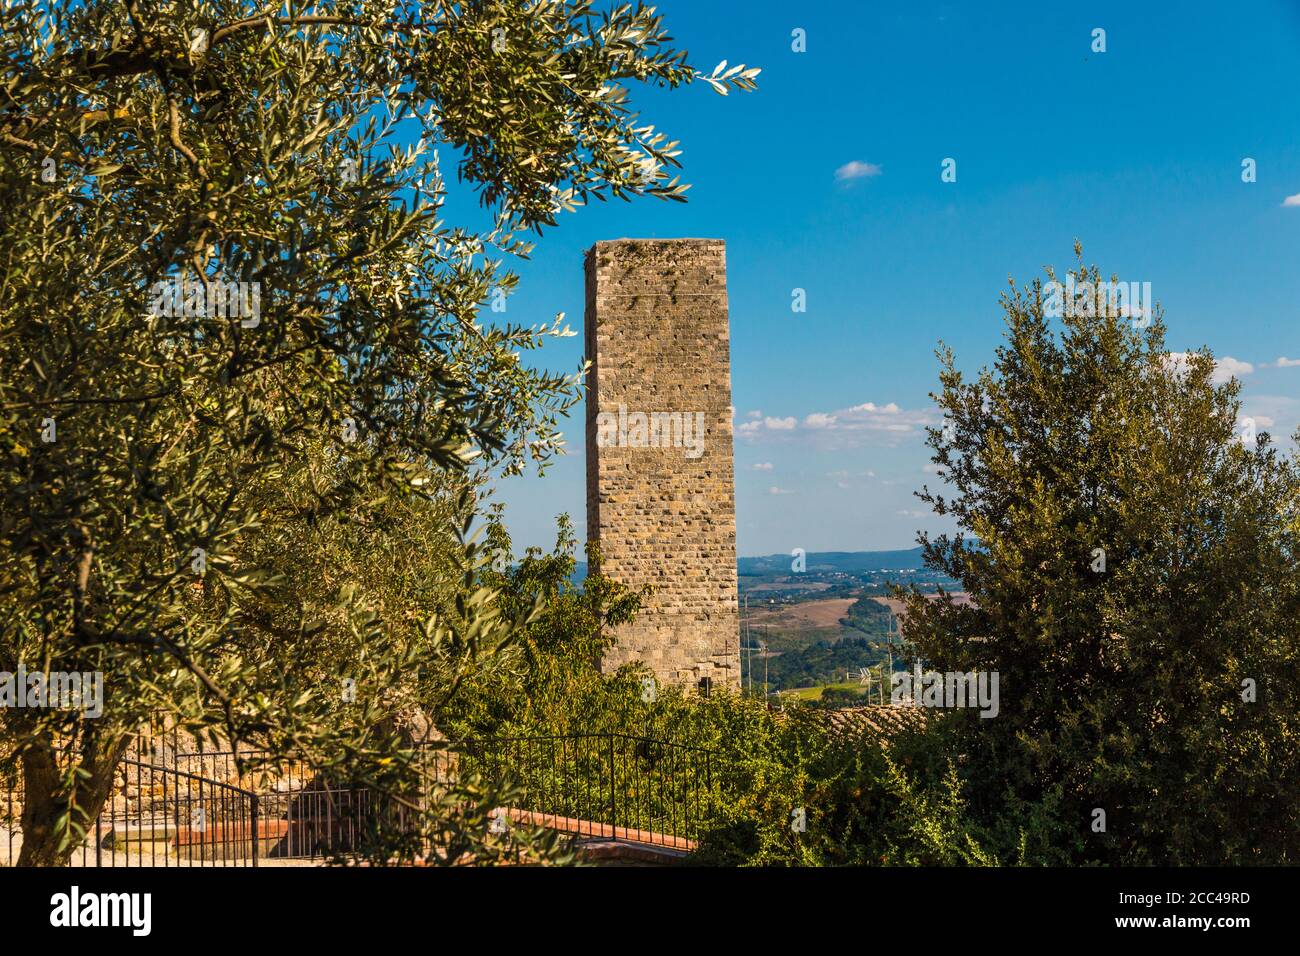 Herrliche Aussicht auf den Torre dei Cugnanesi neben einem Olivenbaum. Der Verteidigungsturm ist von dem von La Rocca umgebenen, orchegartenartigen öffentlichen Garten aus gesehen... Stockfoto